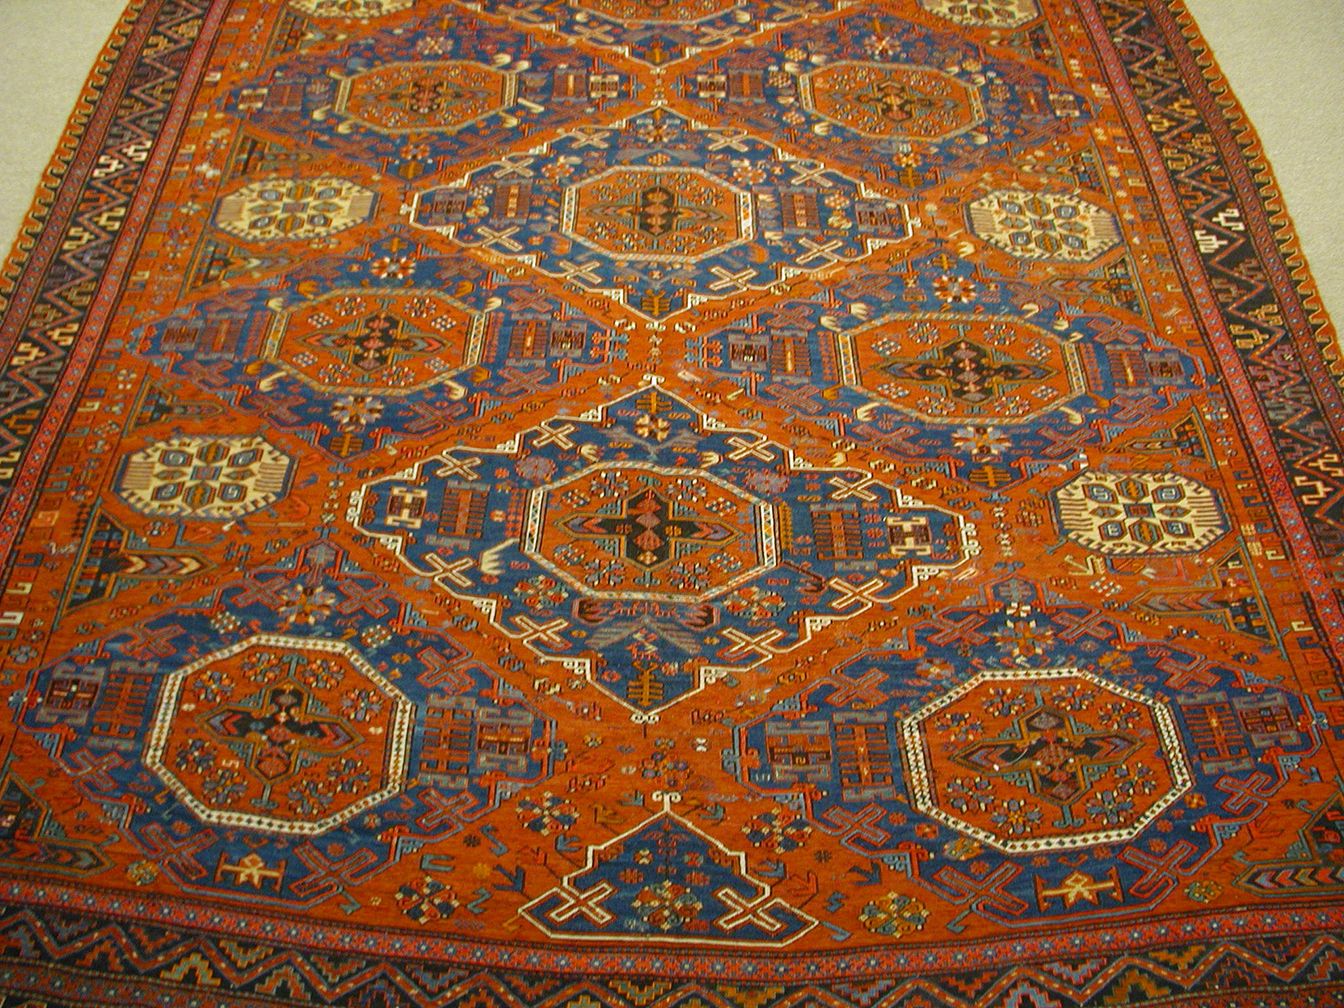 Antique soumac Carpet - # 56703